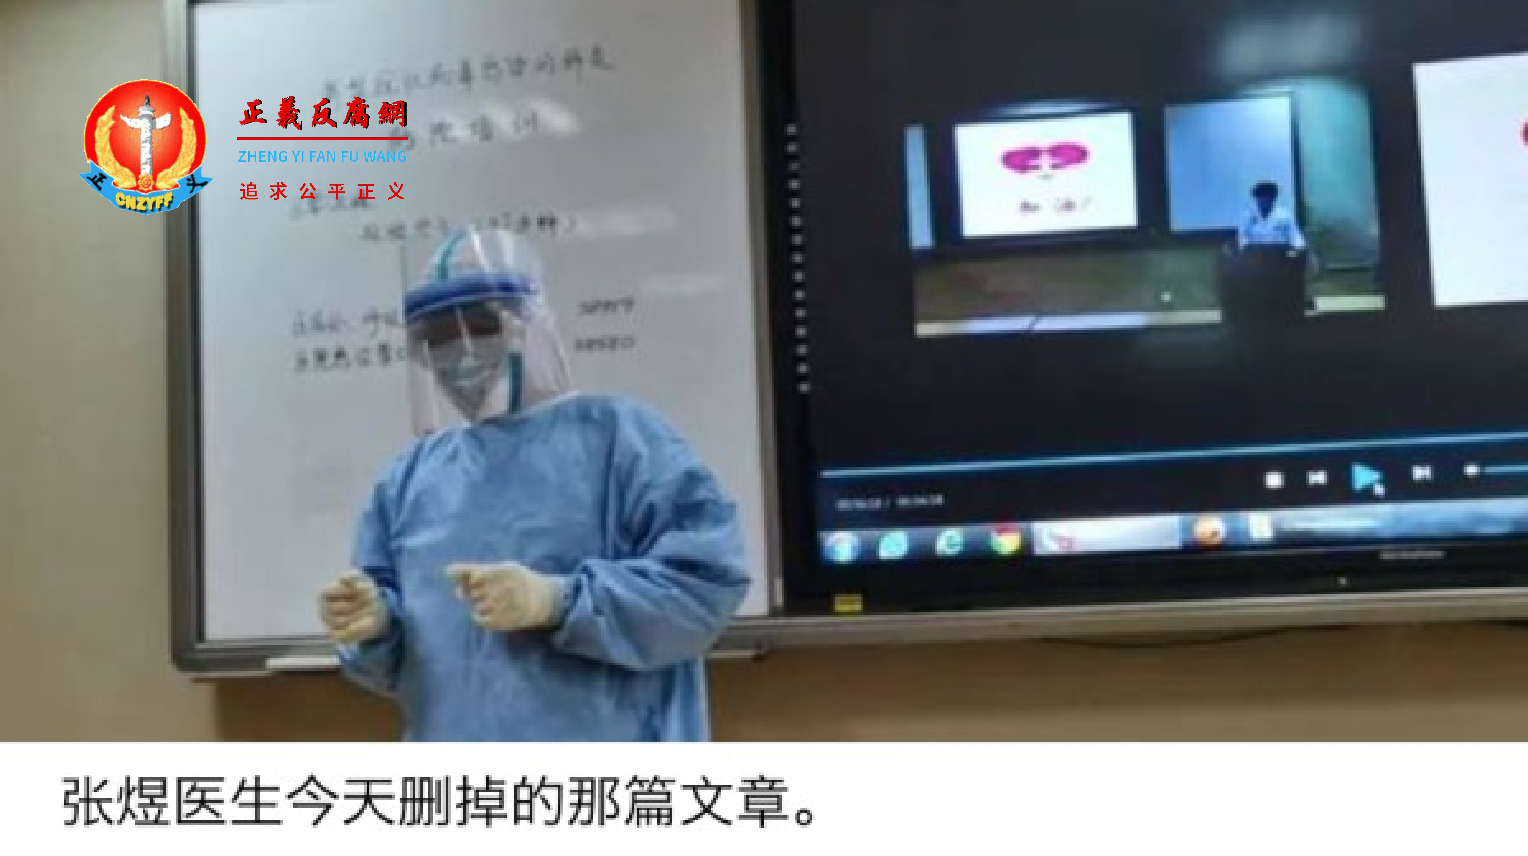 北京大学第三附属医院肿瘤科医生张煜被迫删除相关文章。.png